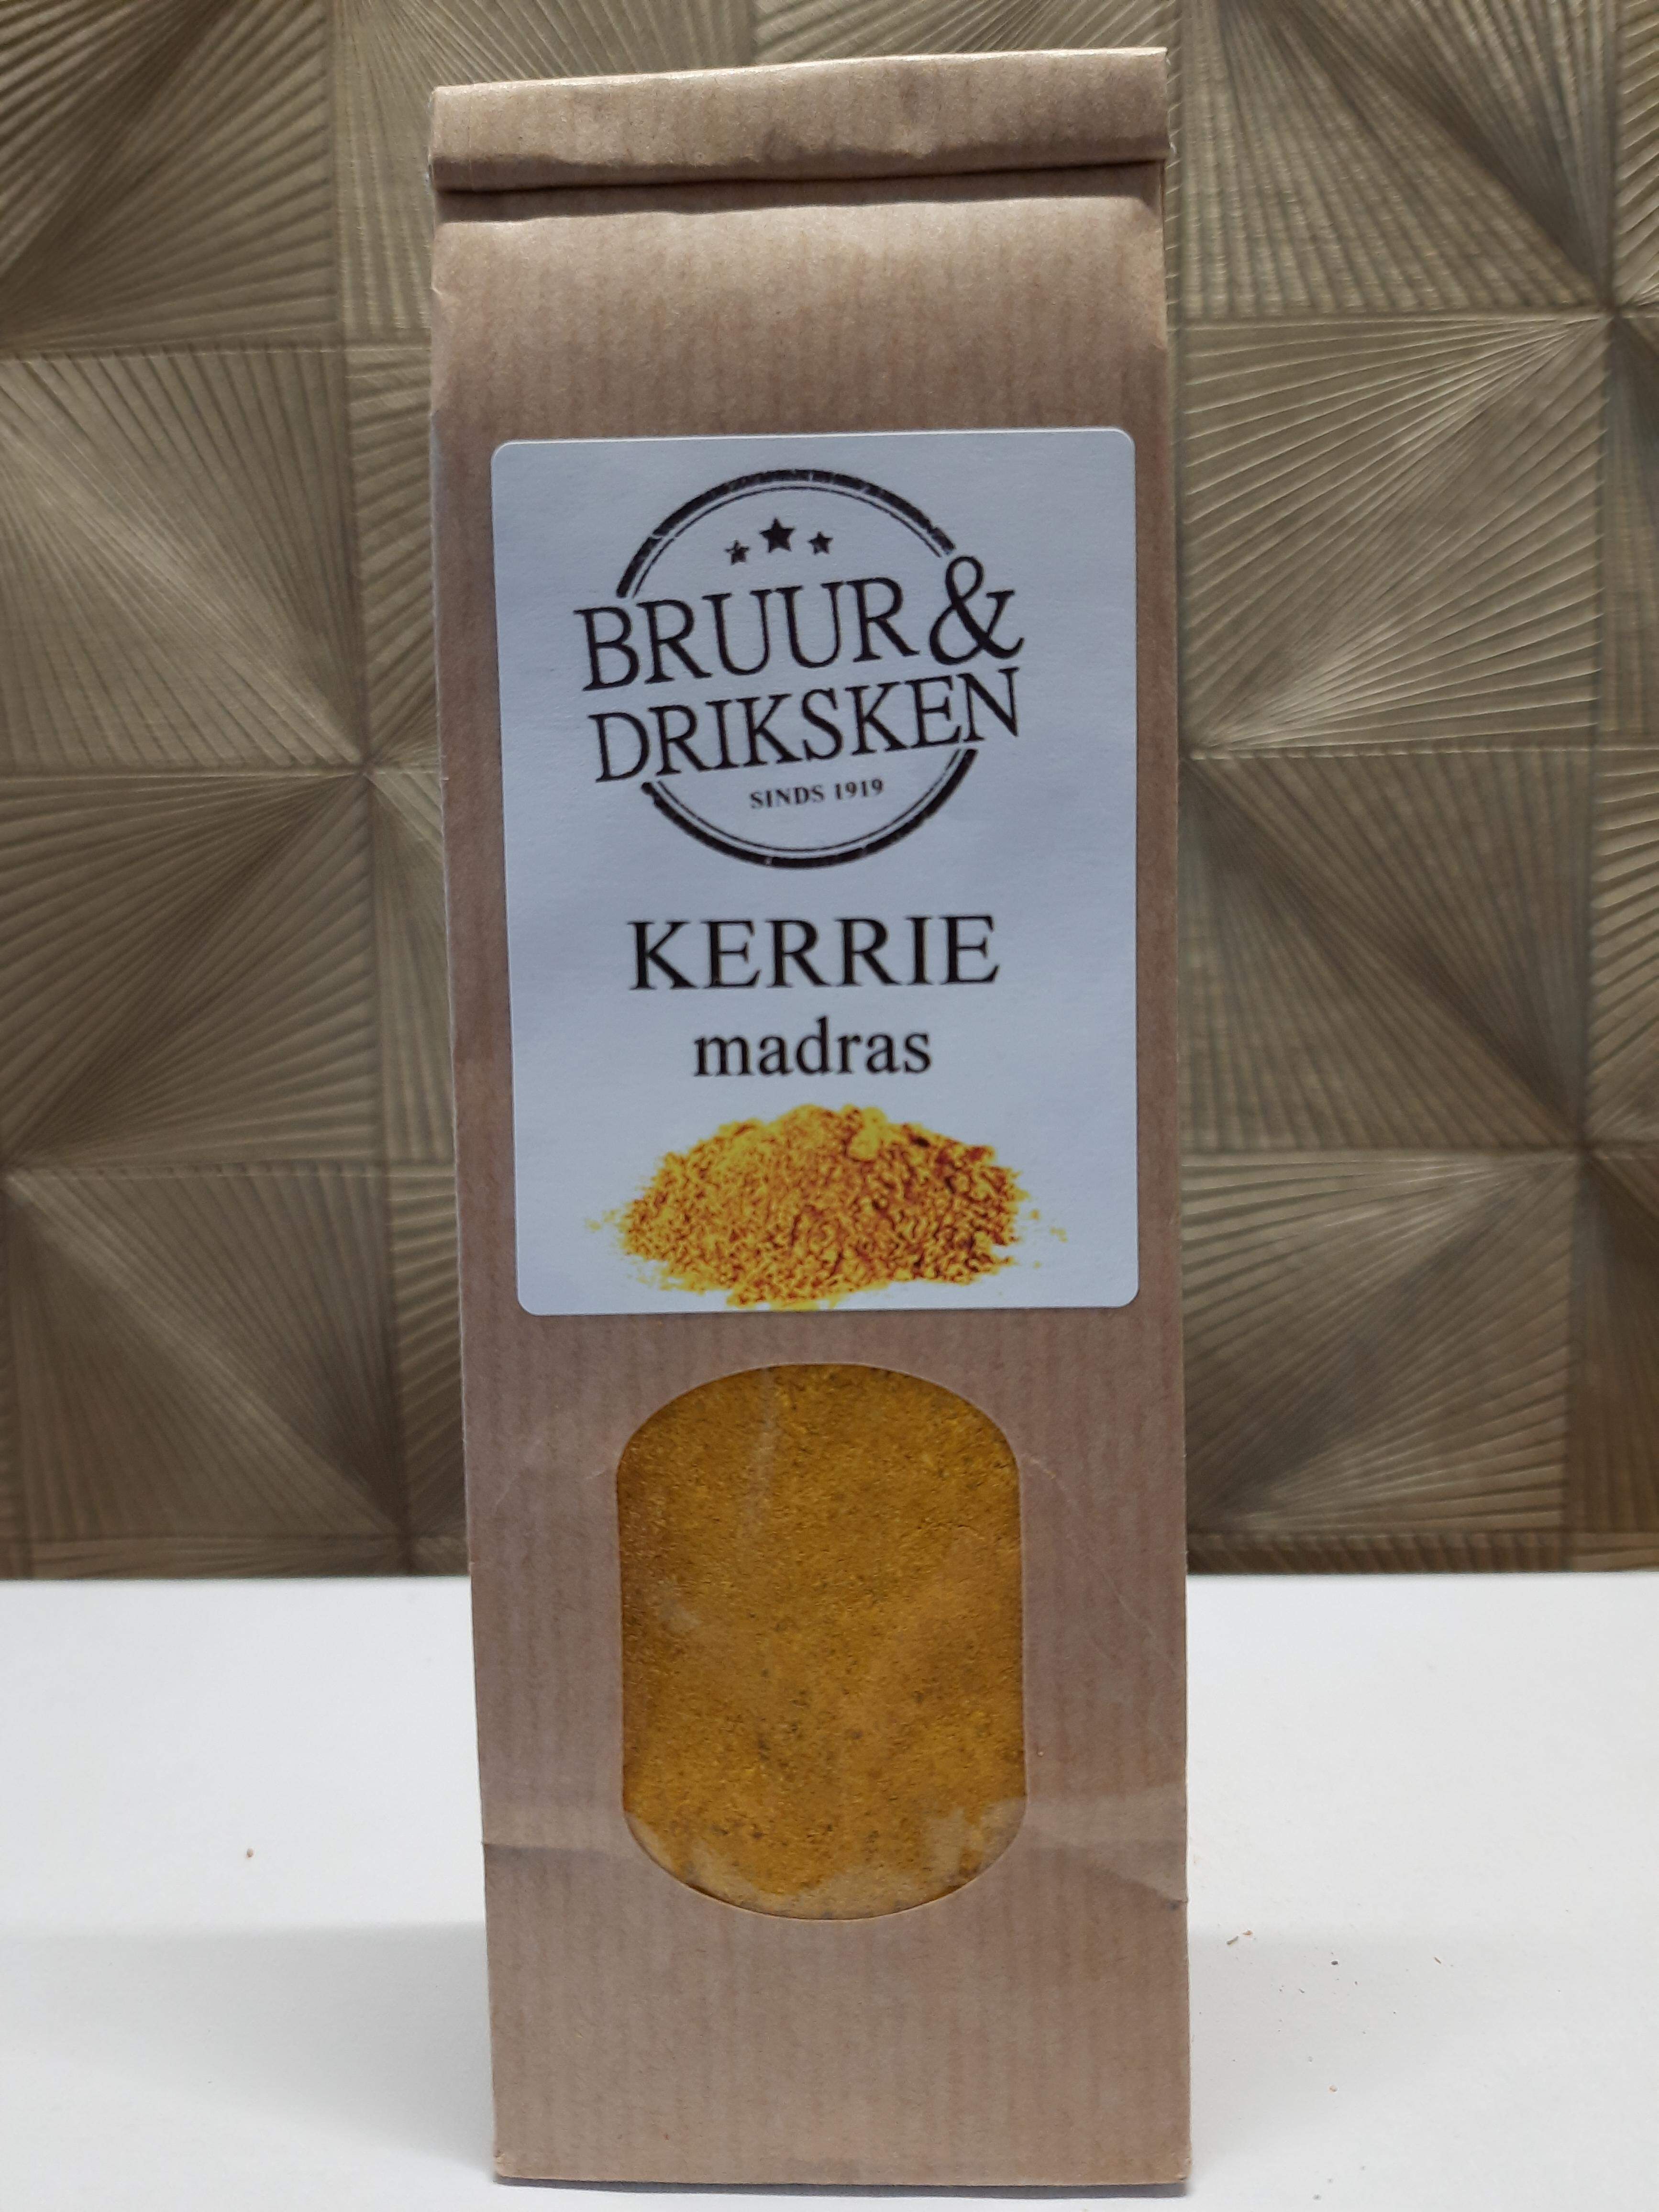 Kerrie Madras Bruur & Driksken